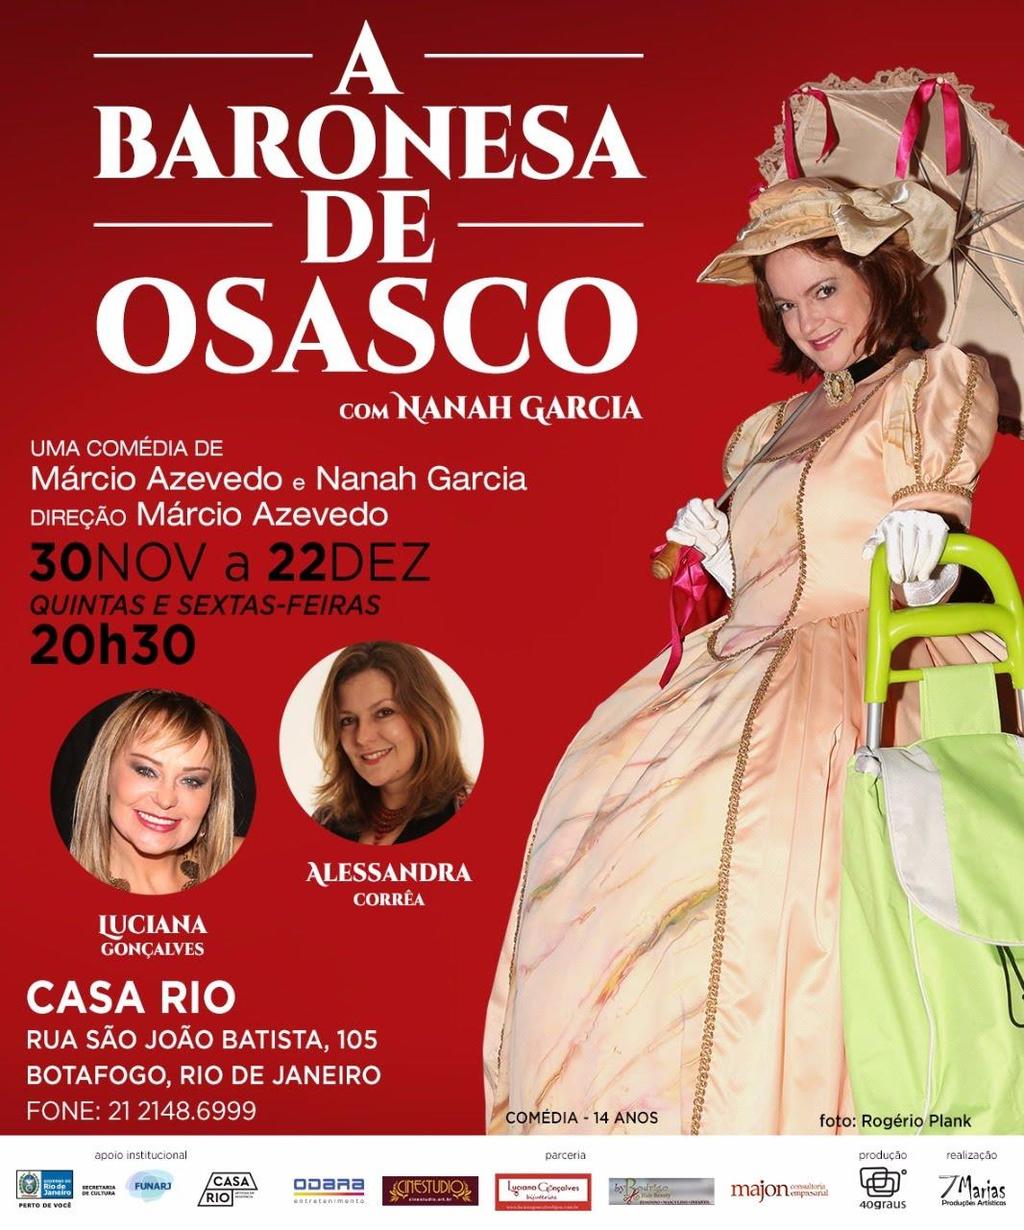 2017 - Baronesa de Osasco: Direção de Produção Casa Rio RJ (flyer do espetáculo) 2018 - Sou